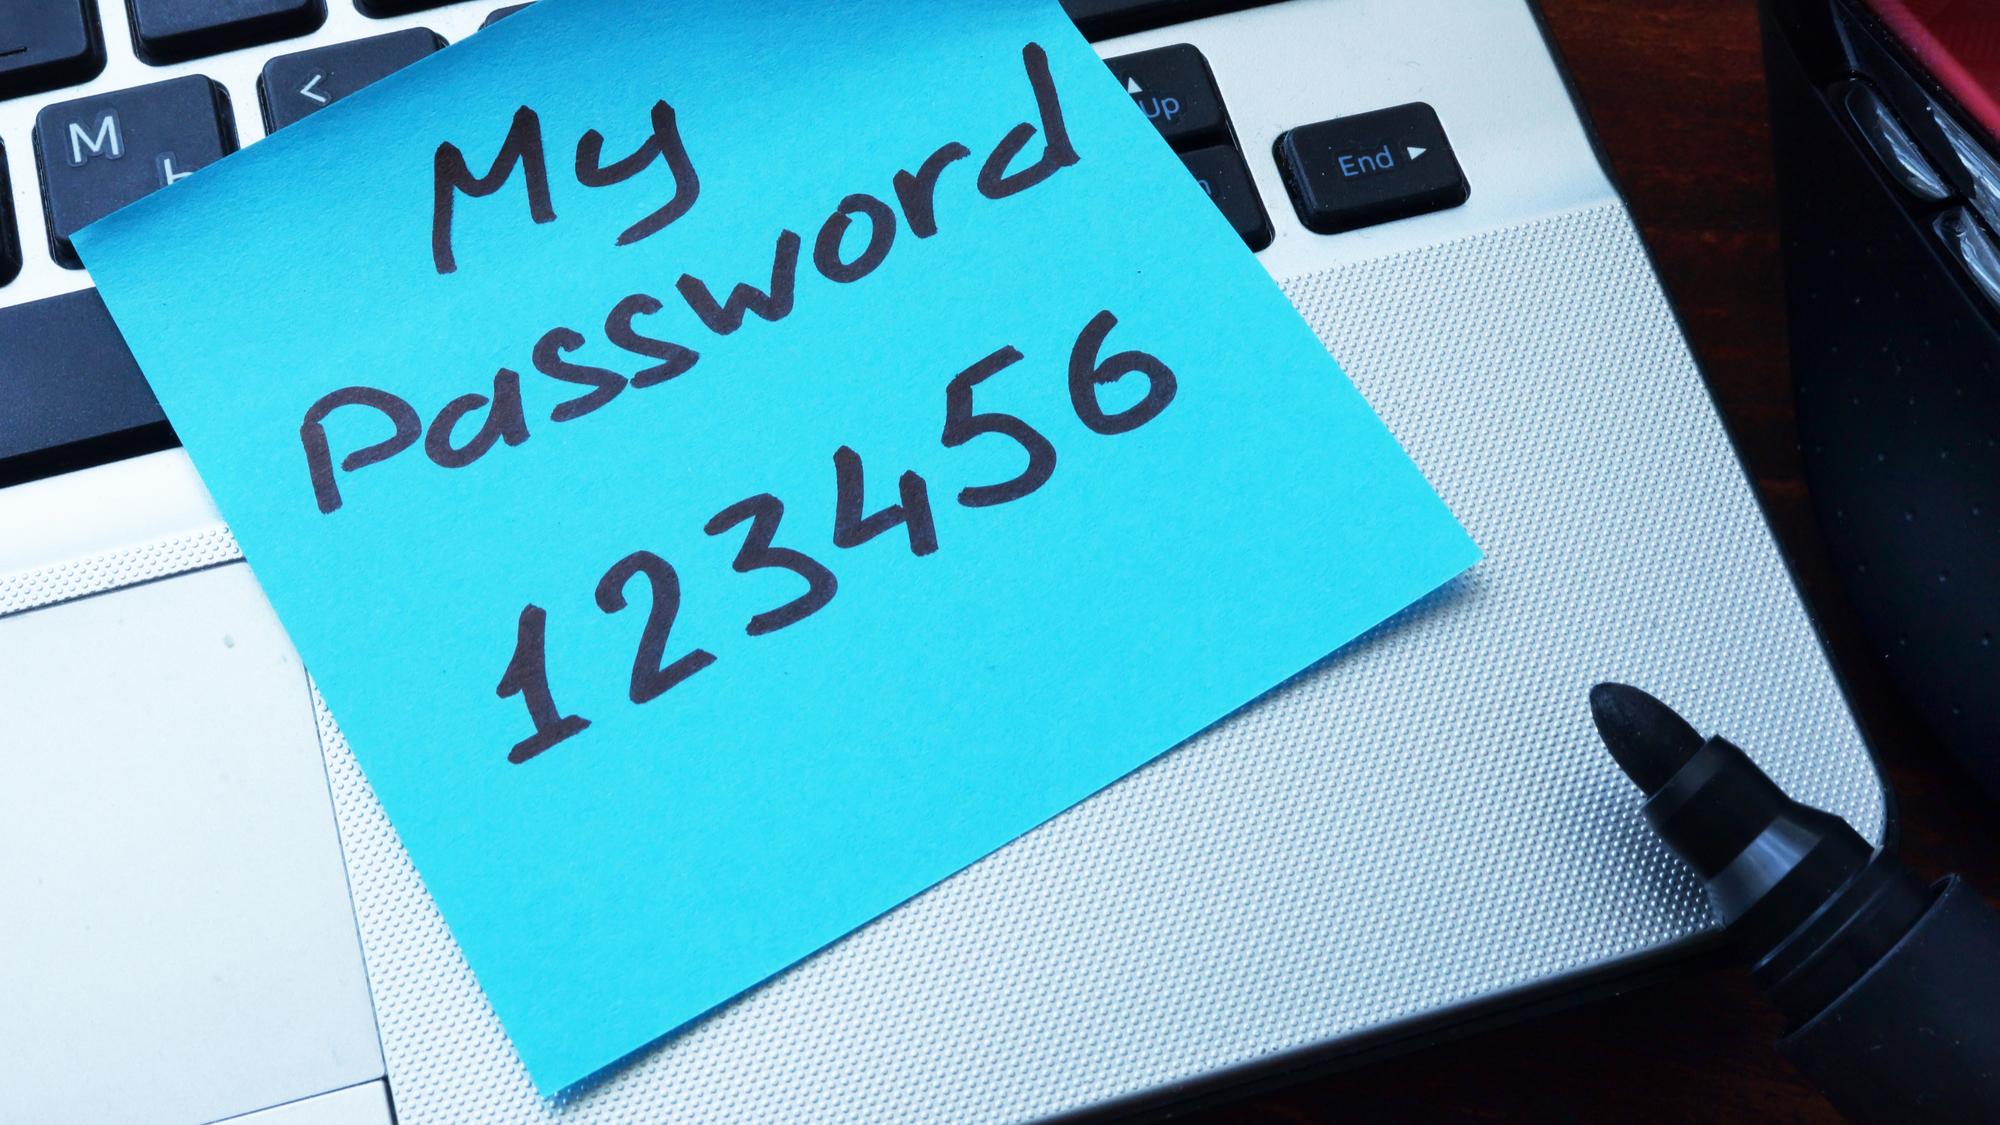 “123456” và “password” là một trong những mật khẩu thường được sử dụng trong năm 2017